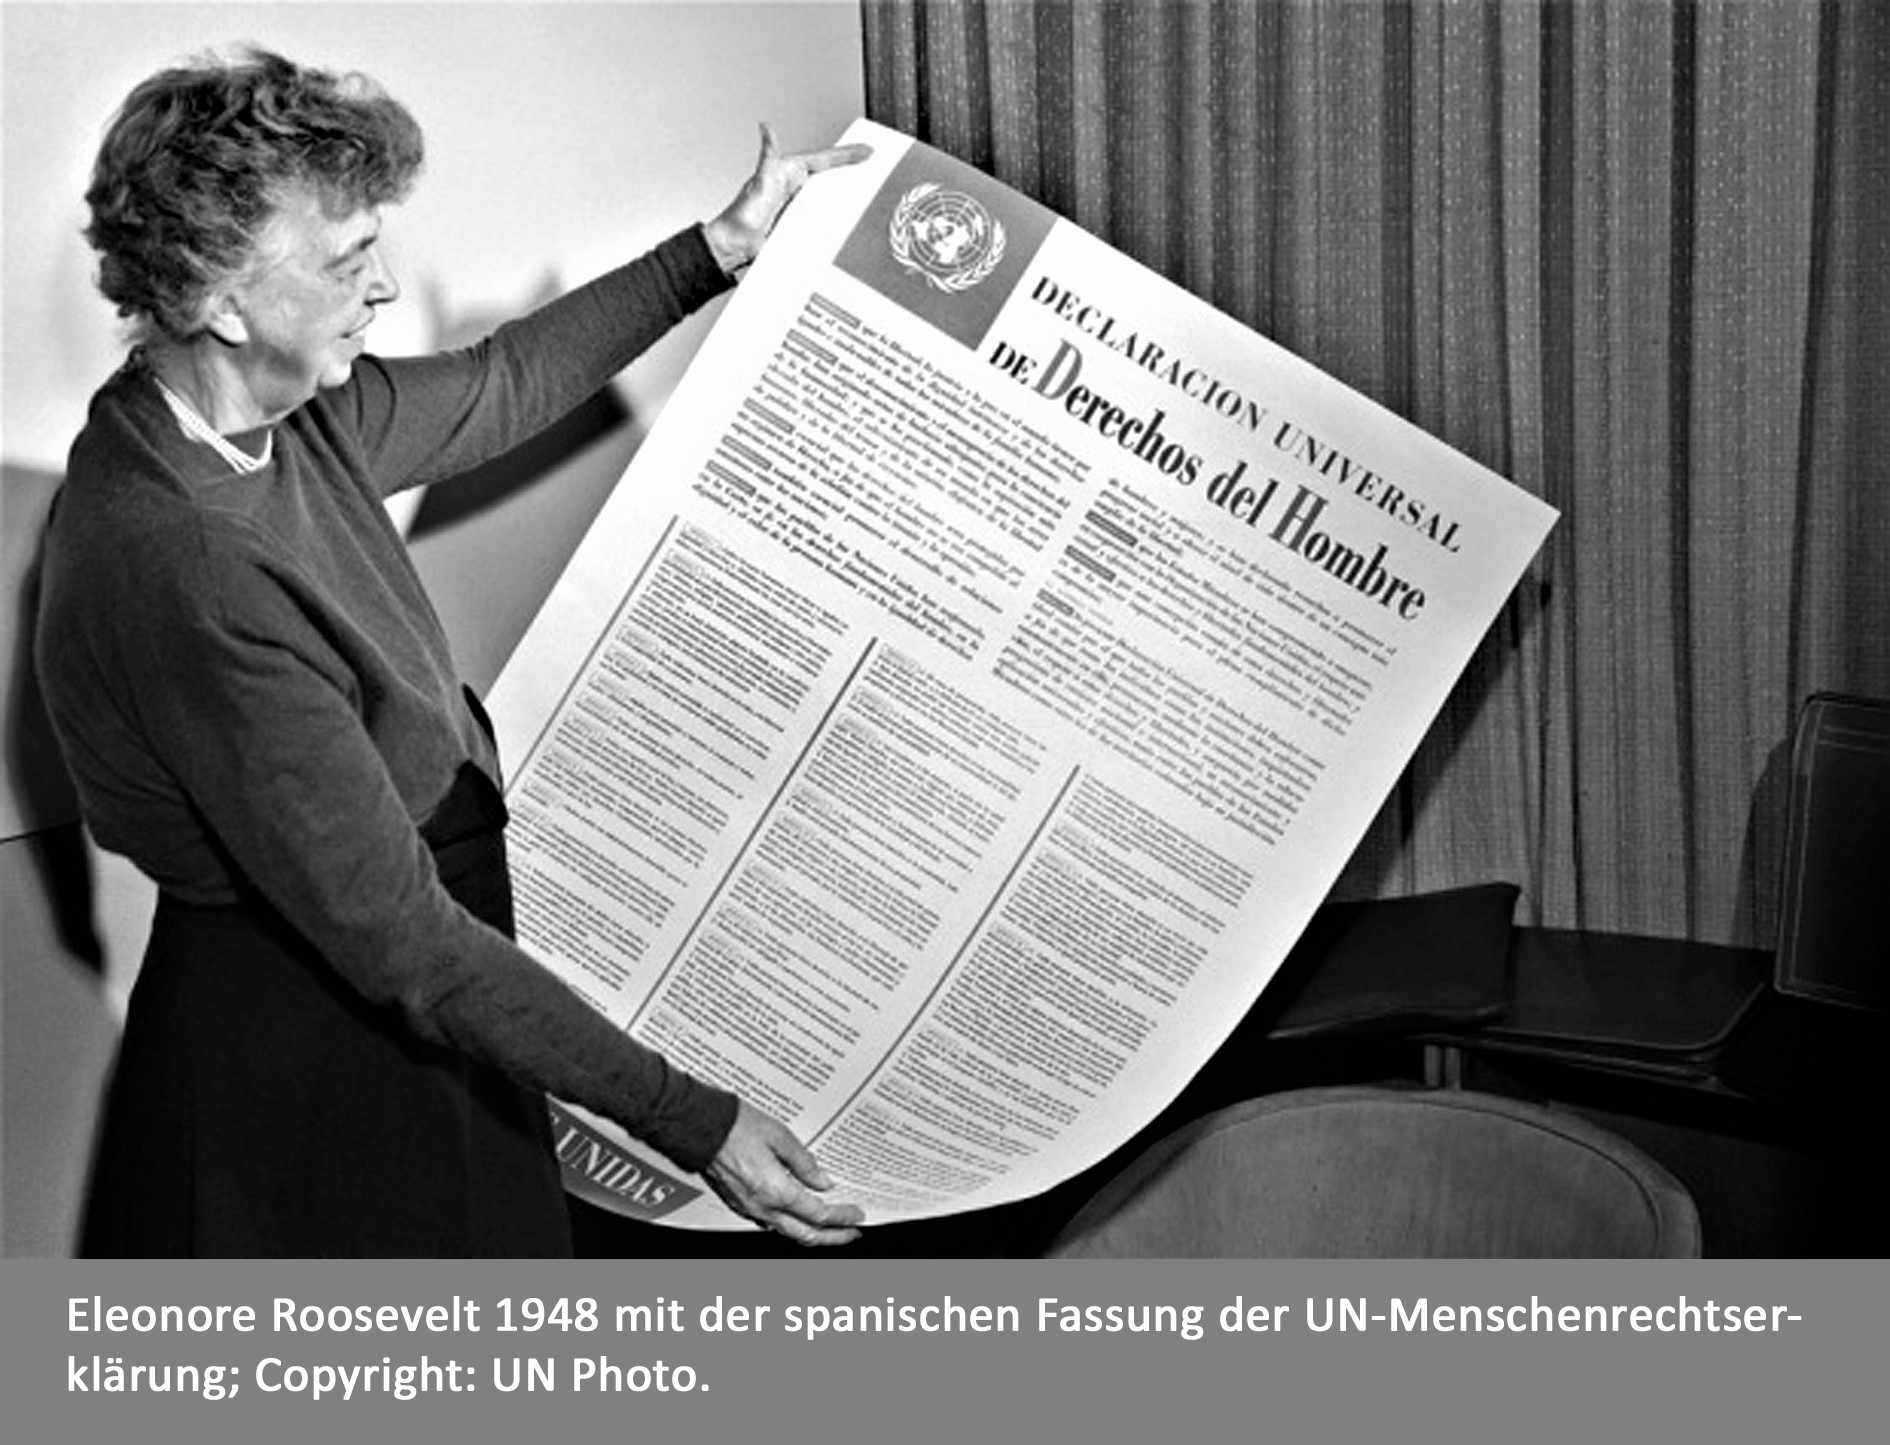 Eleonore Roosevelt mit einem Exemplar der spanischen Version der UN-Erklärung der Menschenrechte 1948.